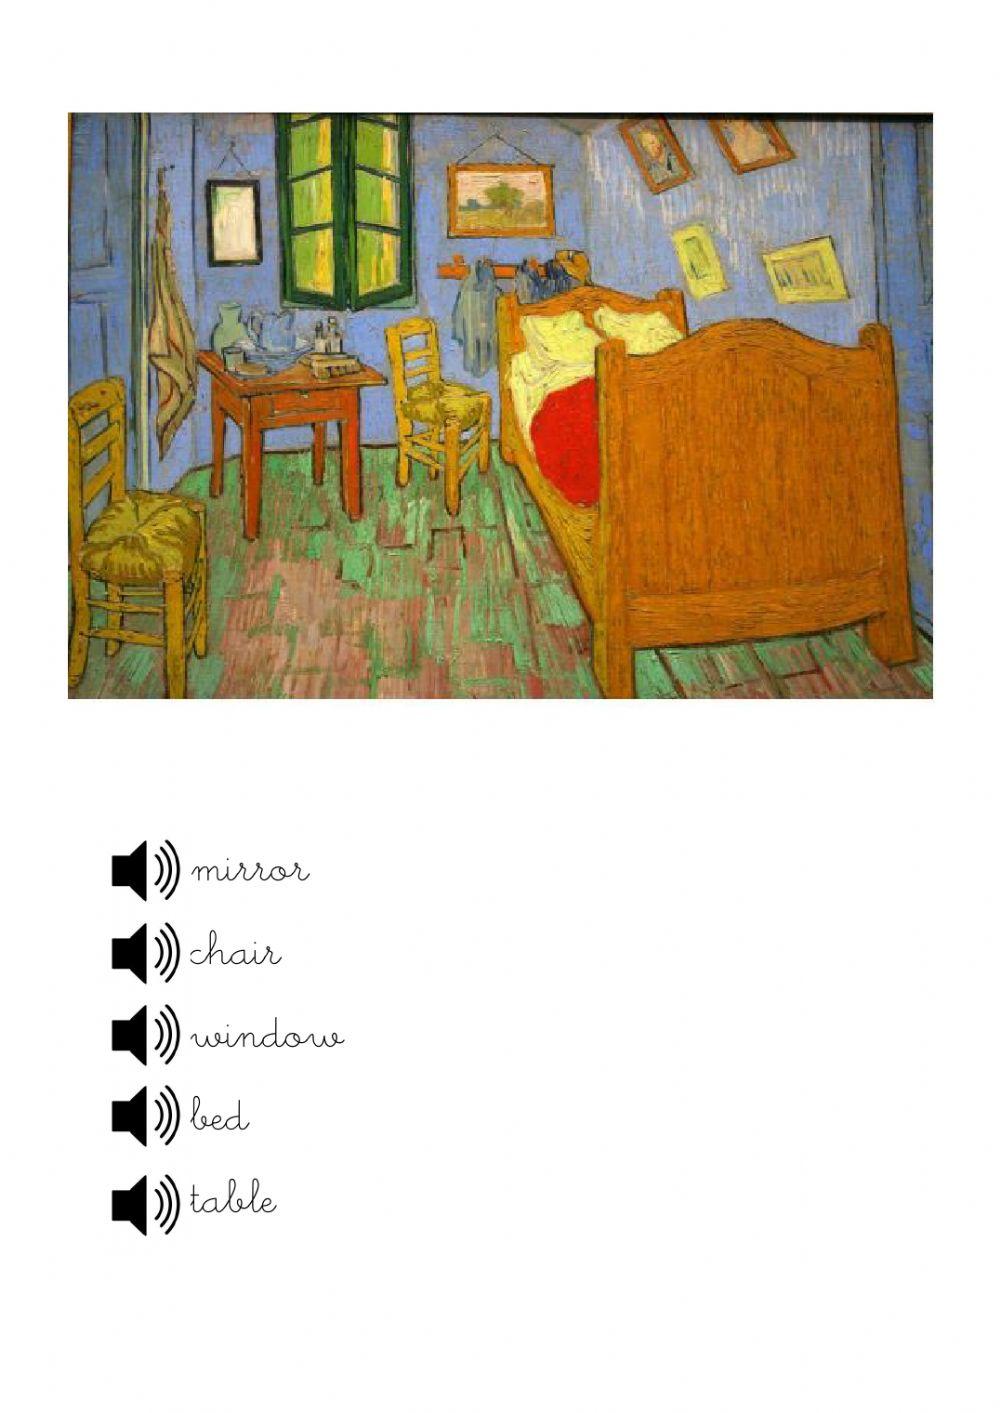 Vincent's bedroom